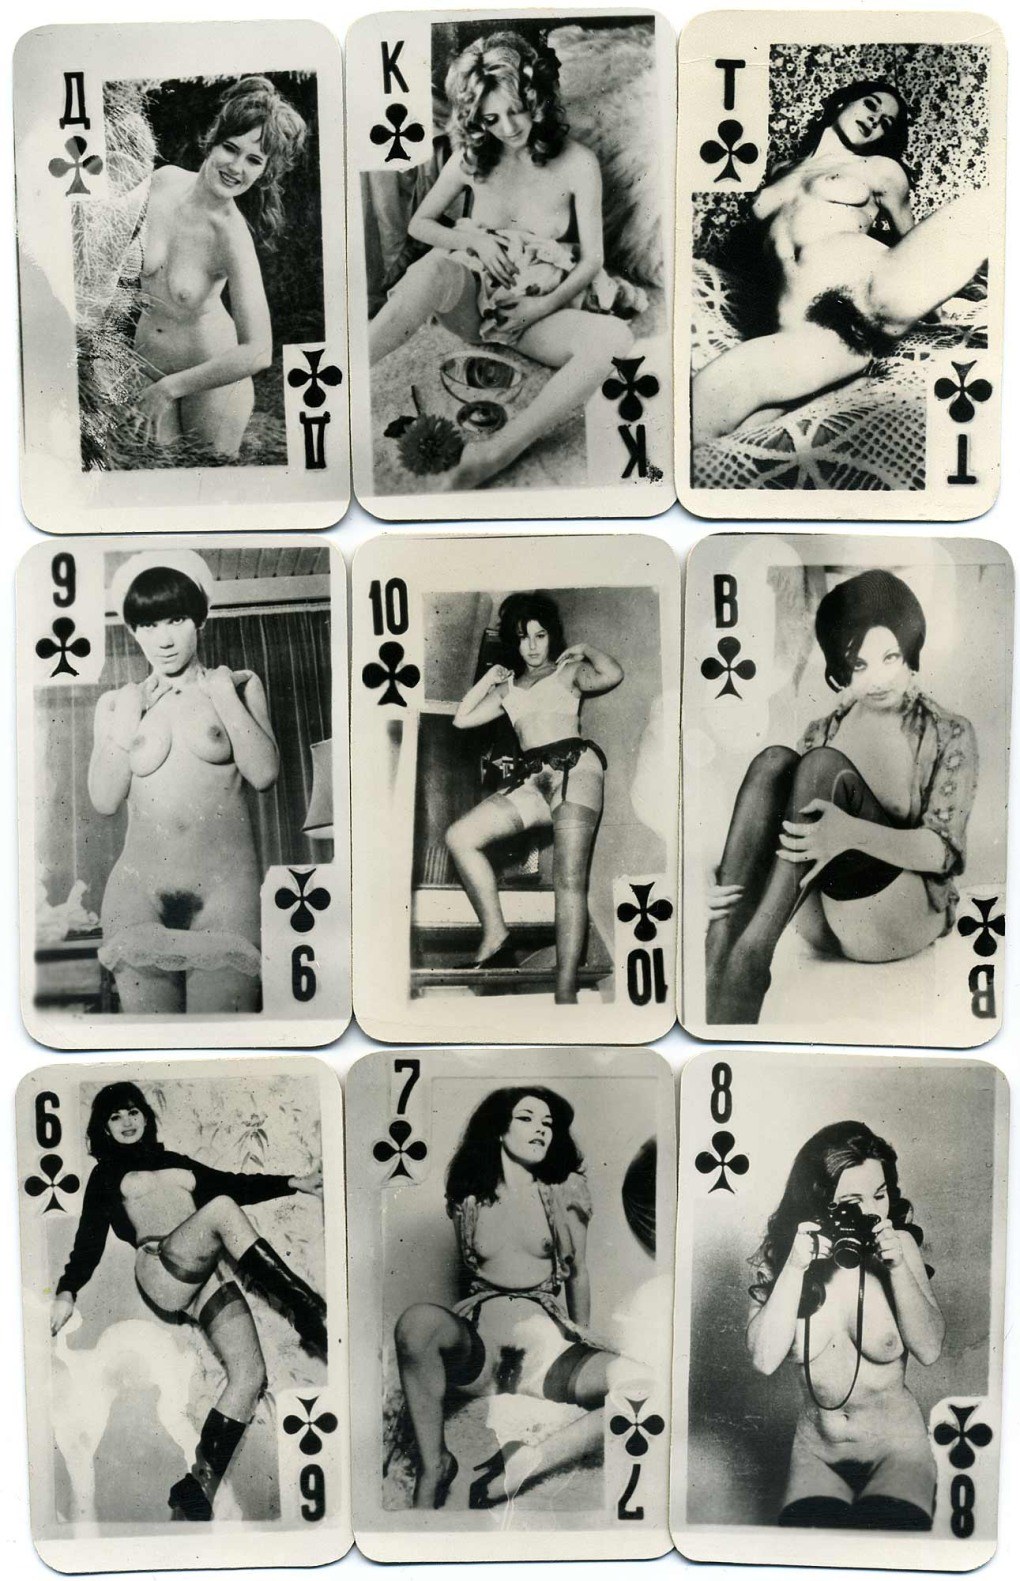 Эротические чёрно-белые игральные карты х годов - голые девушки на фоне природы.